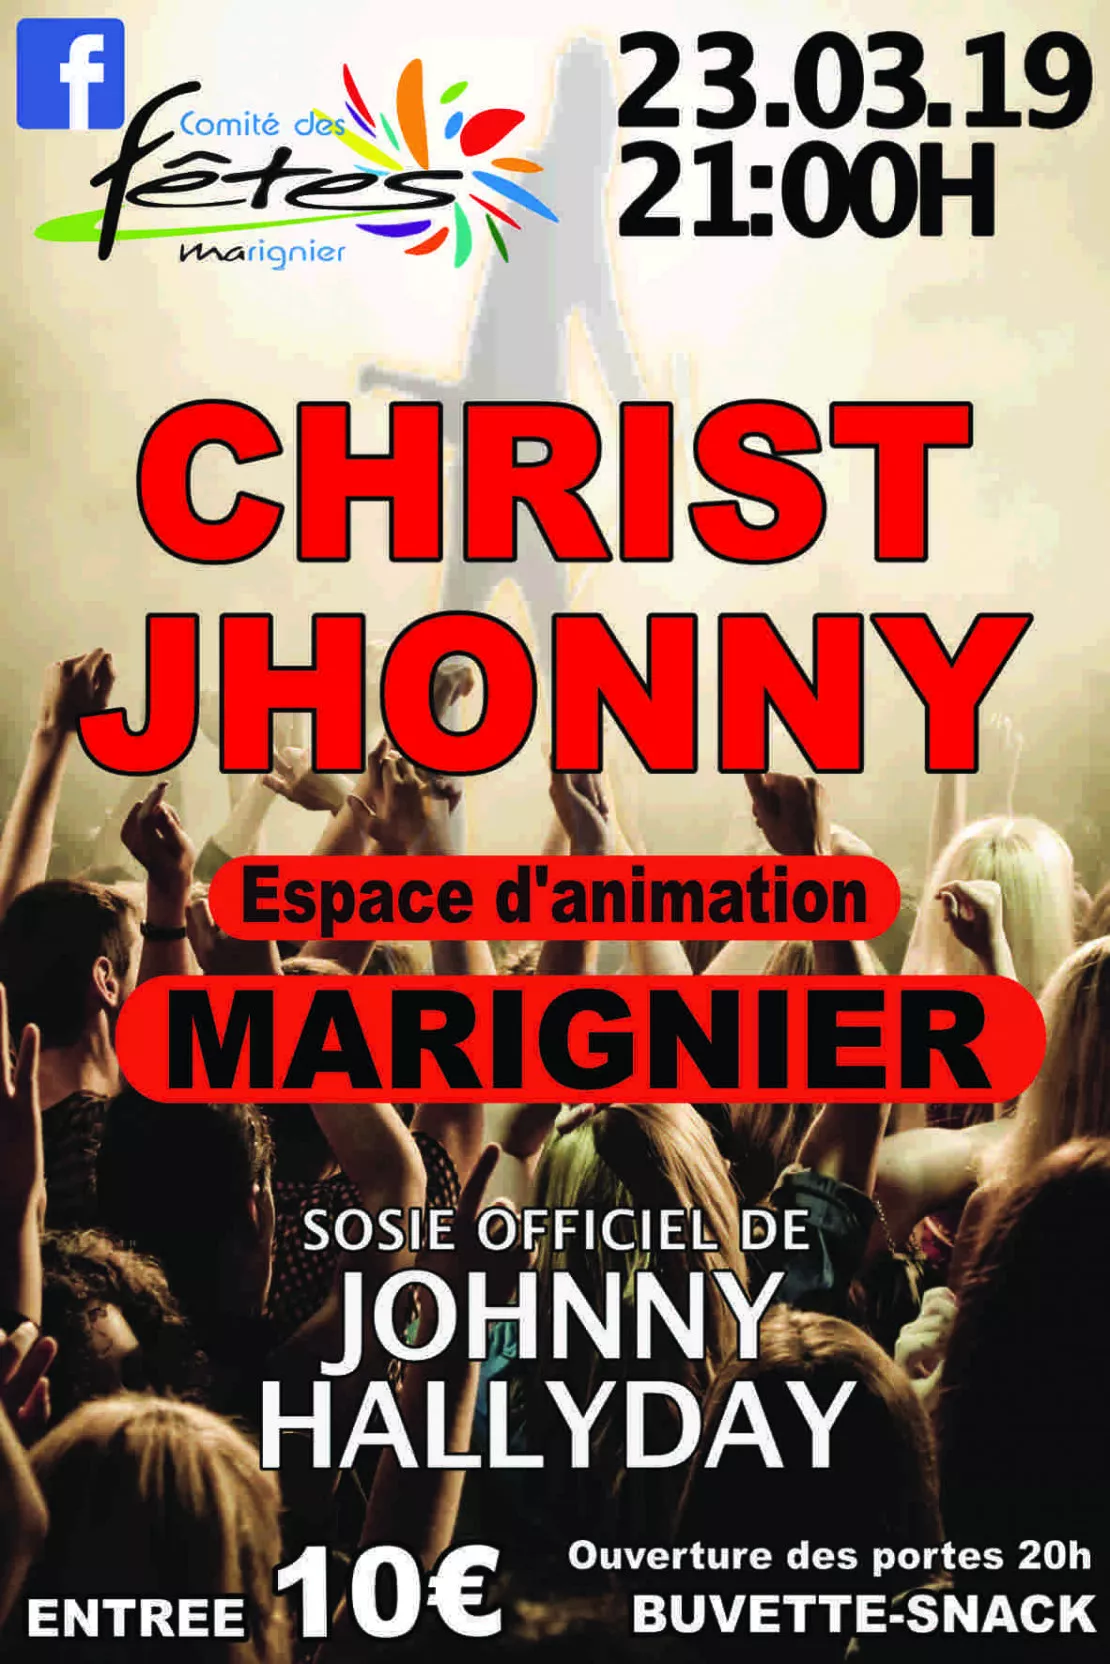 Marignier - spectacle de Jhonny Christ